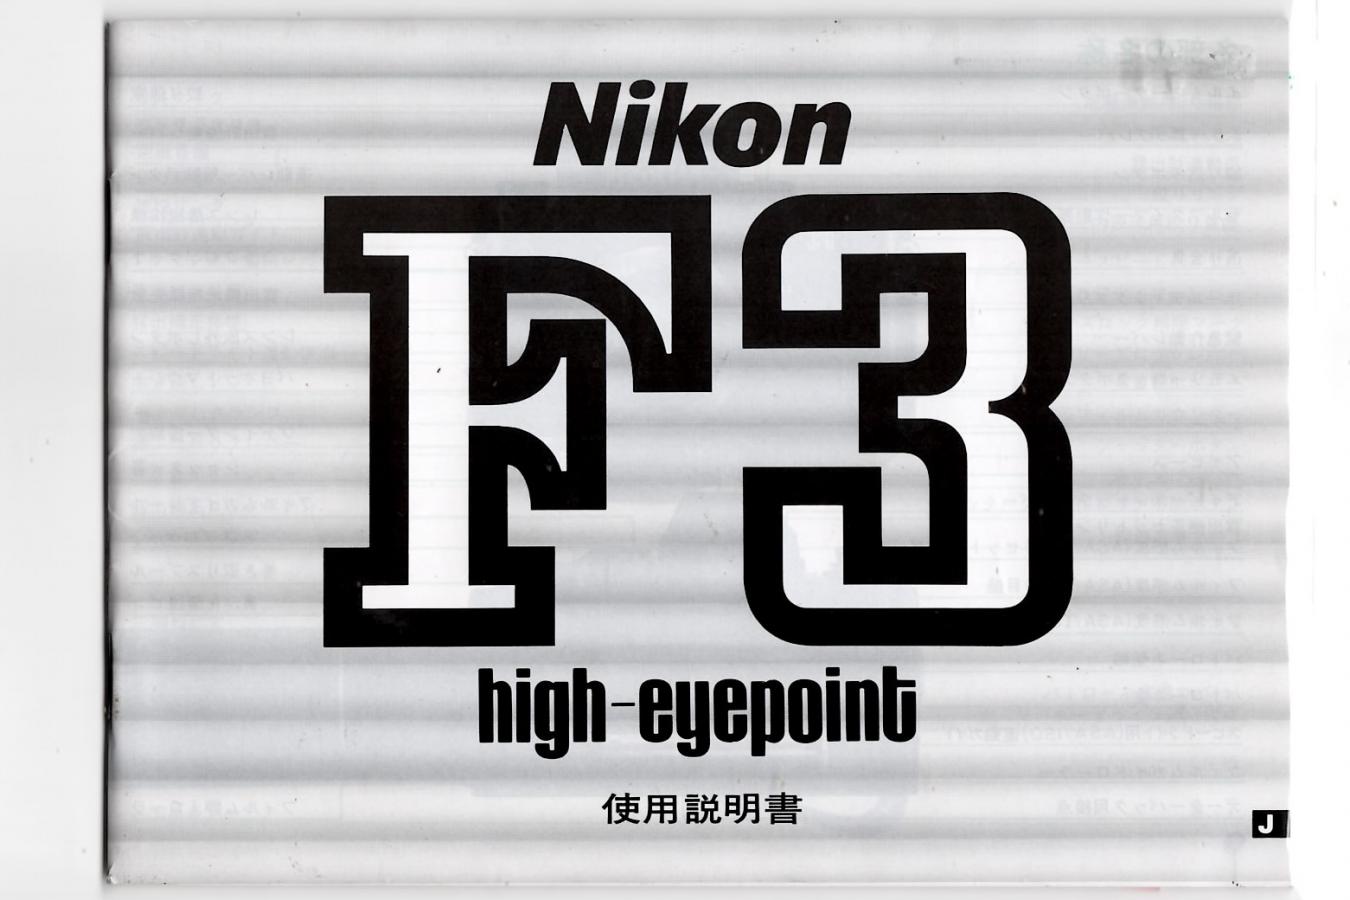 【絶版取説】Nikon F3 high-eyepoint 取説